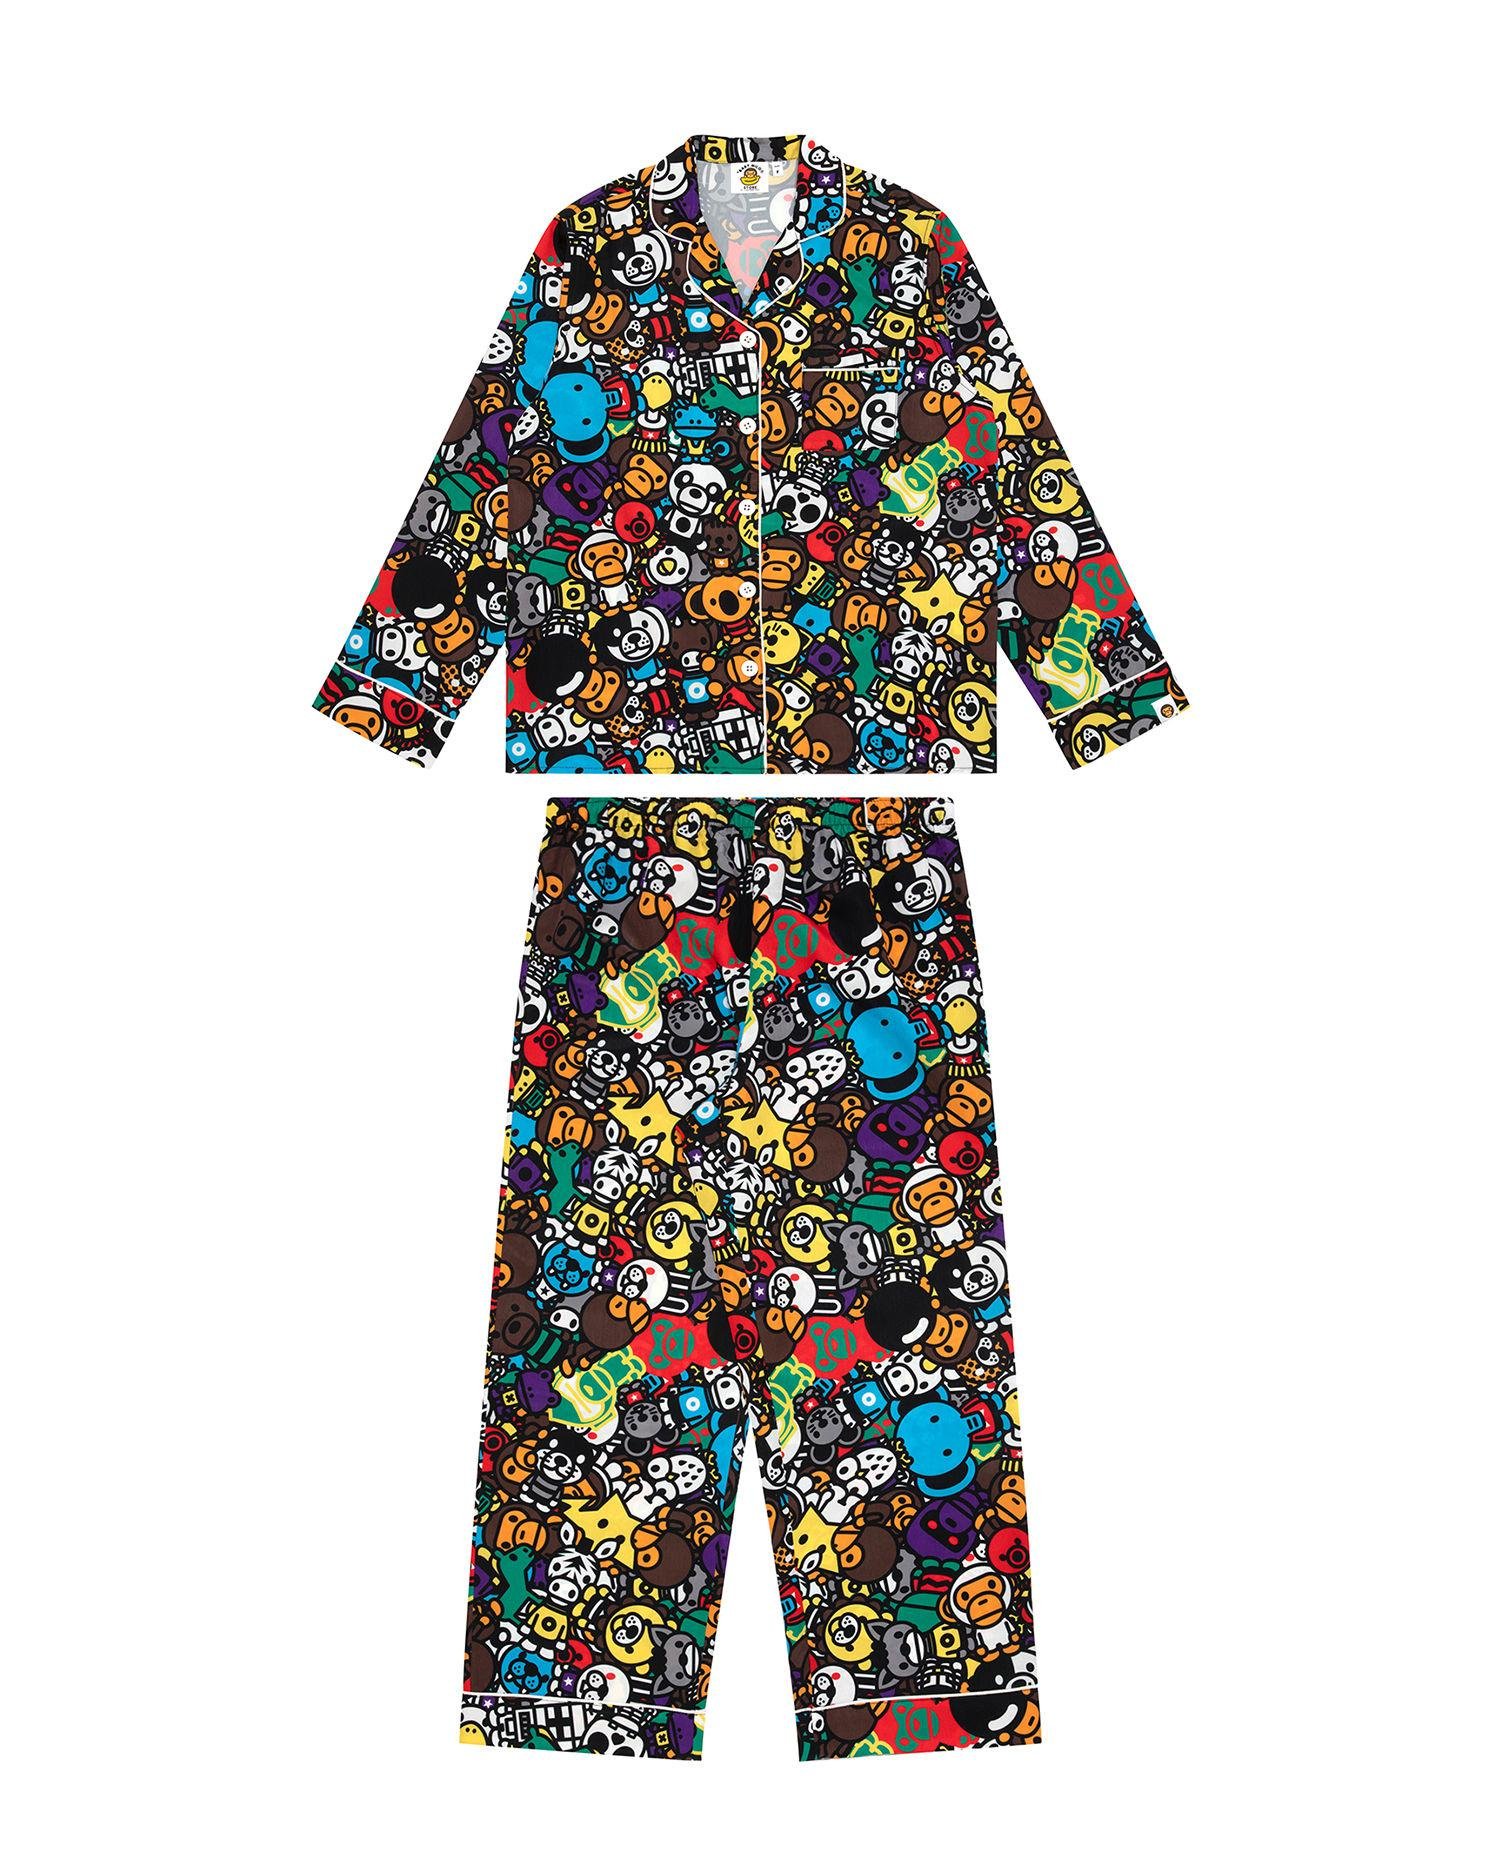 Baby Milo pyjamas by *BABY MILO(R) STORE